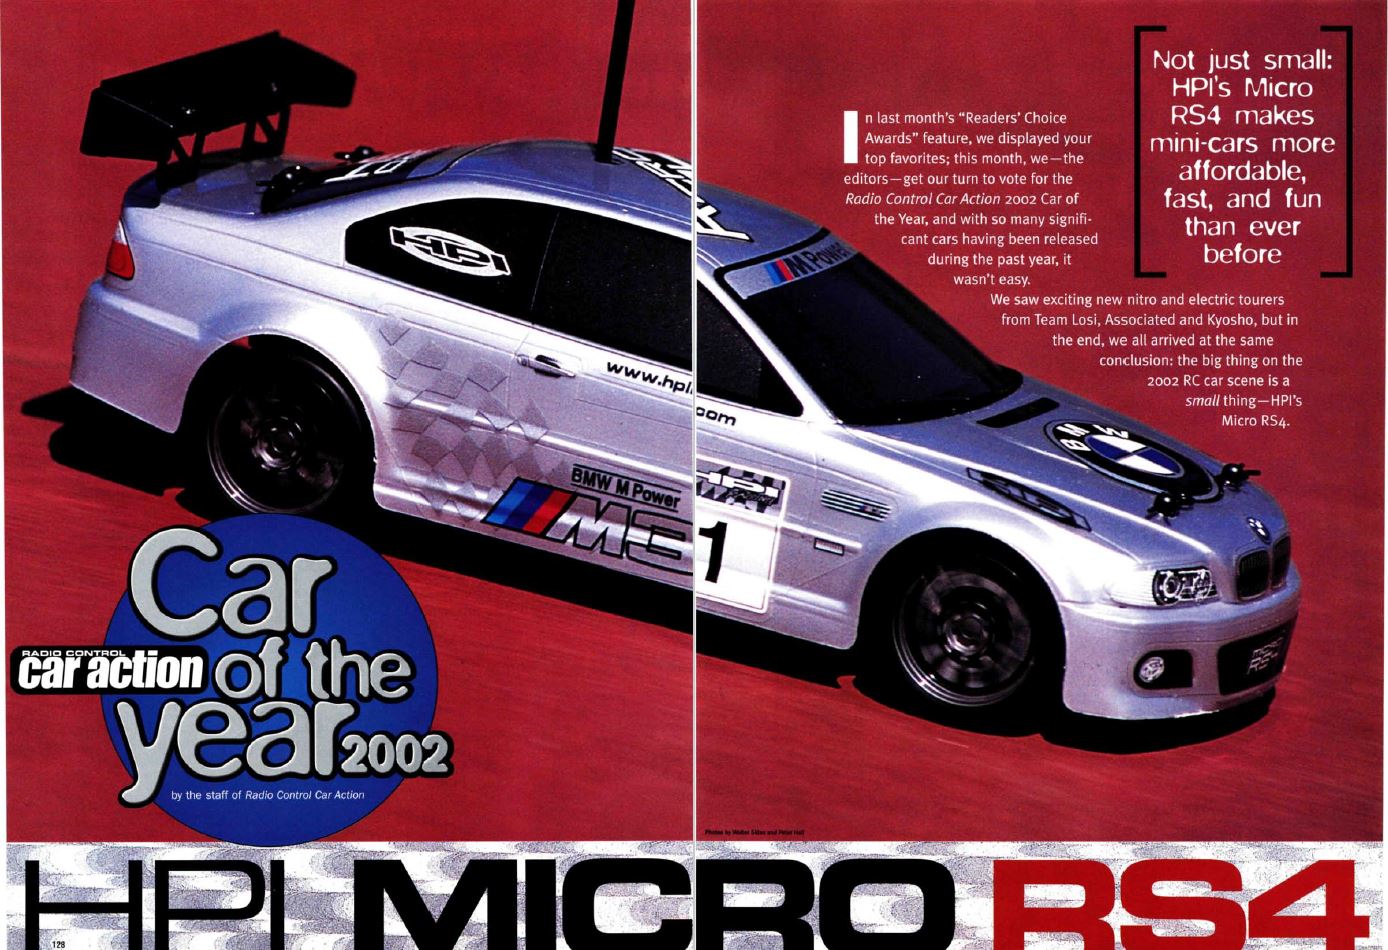 #TBT Le HPI Racing Micro RS4 tire son nom "voiture de l'année" Dans le numéro d'août 2002